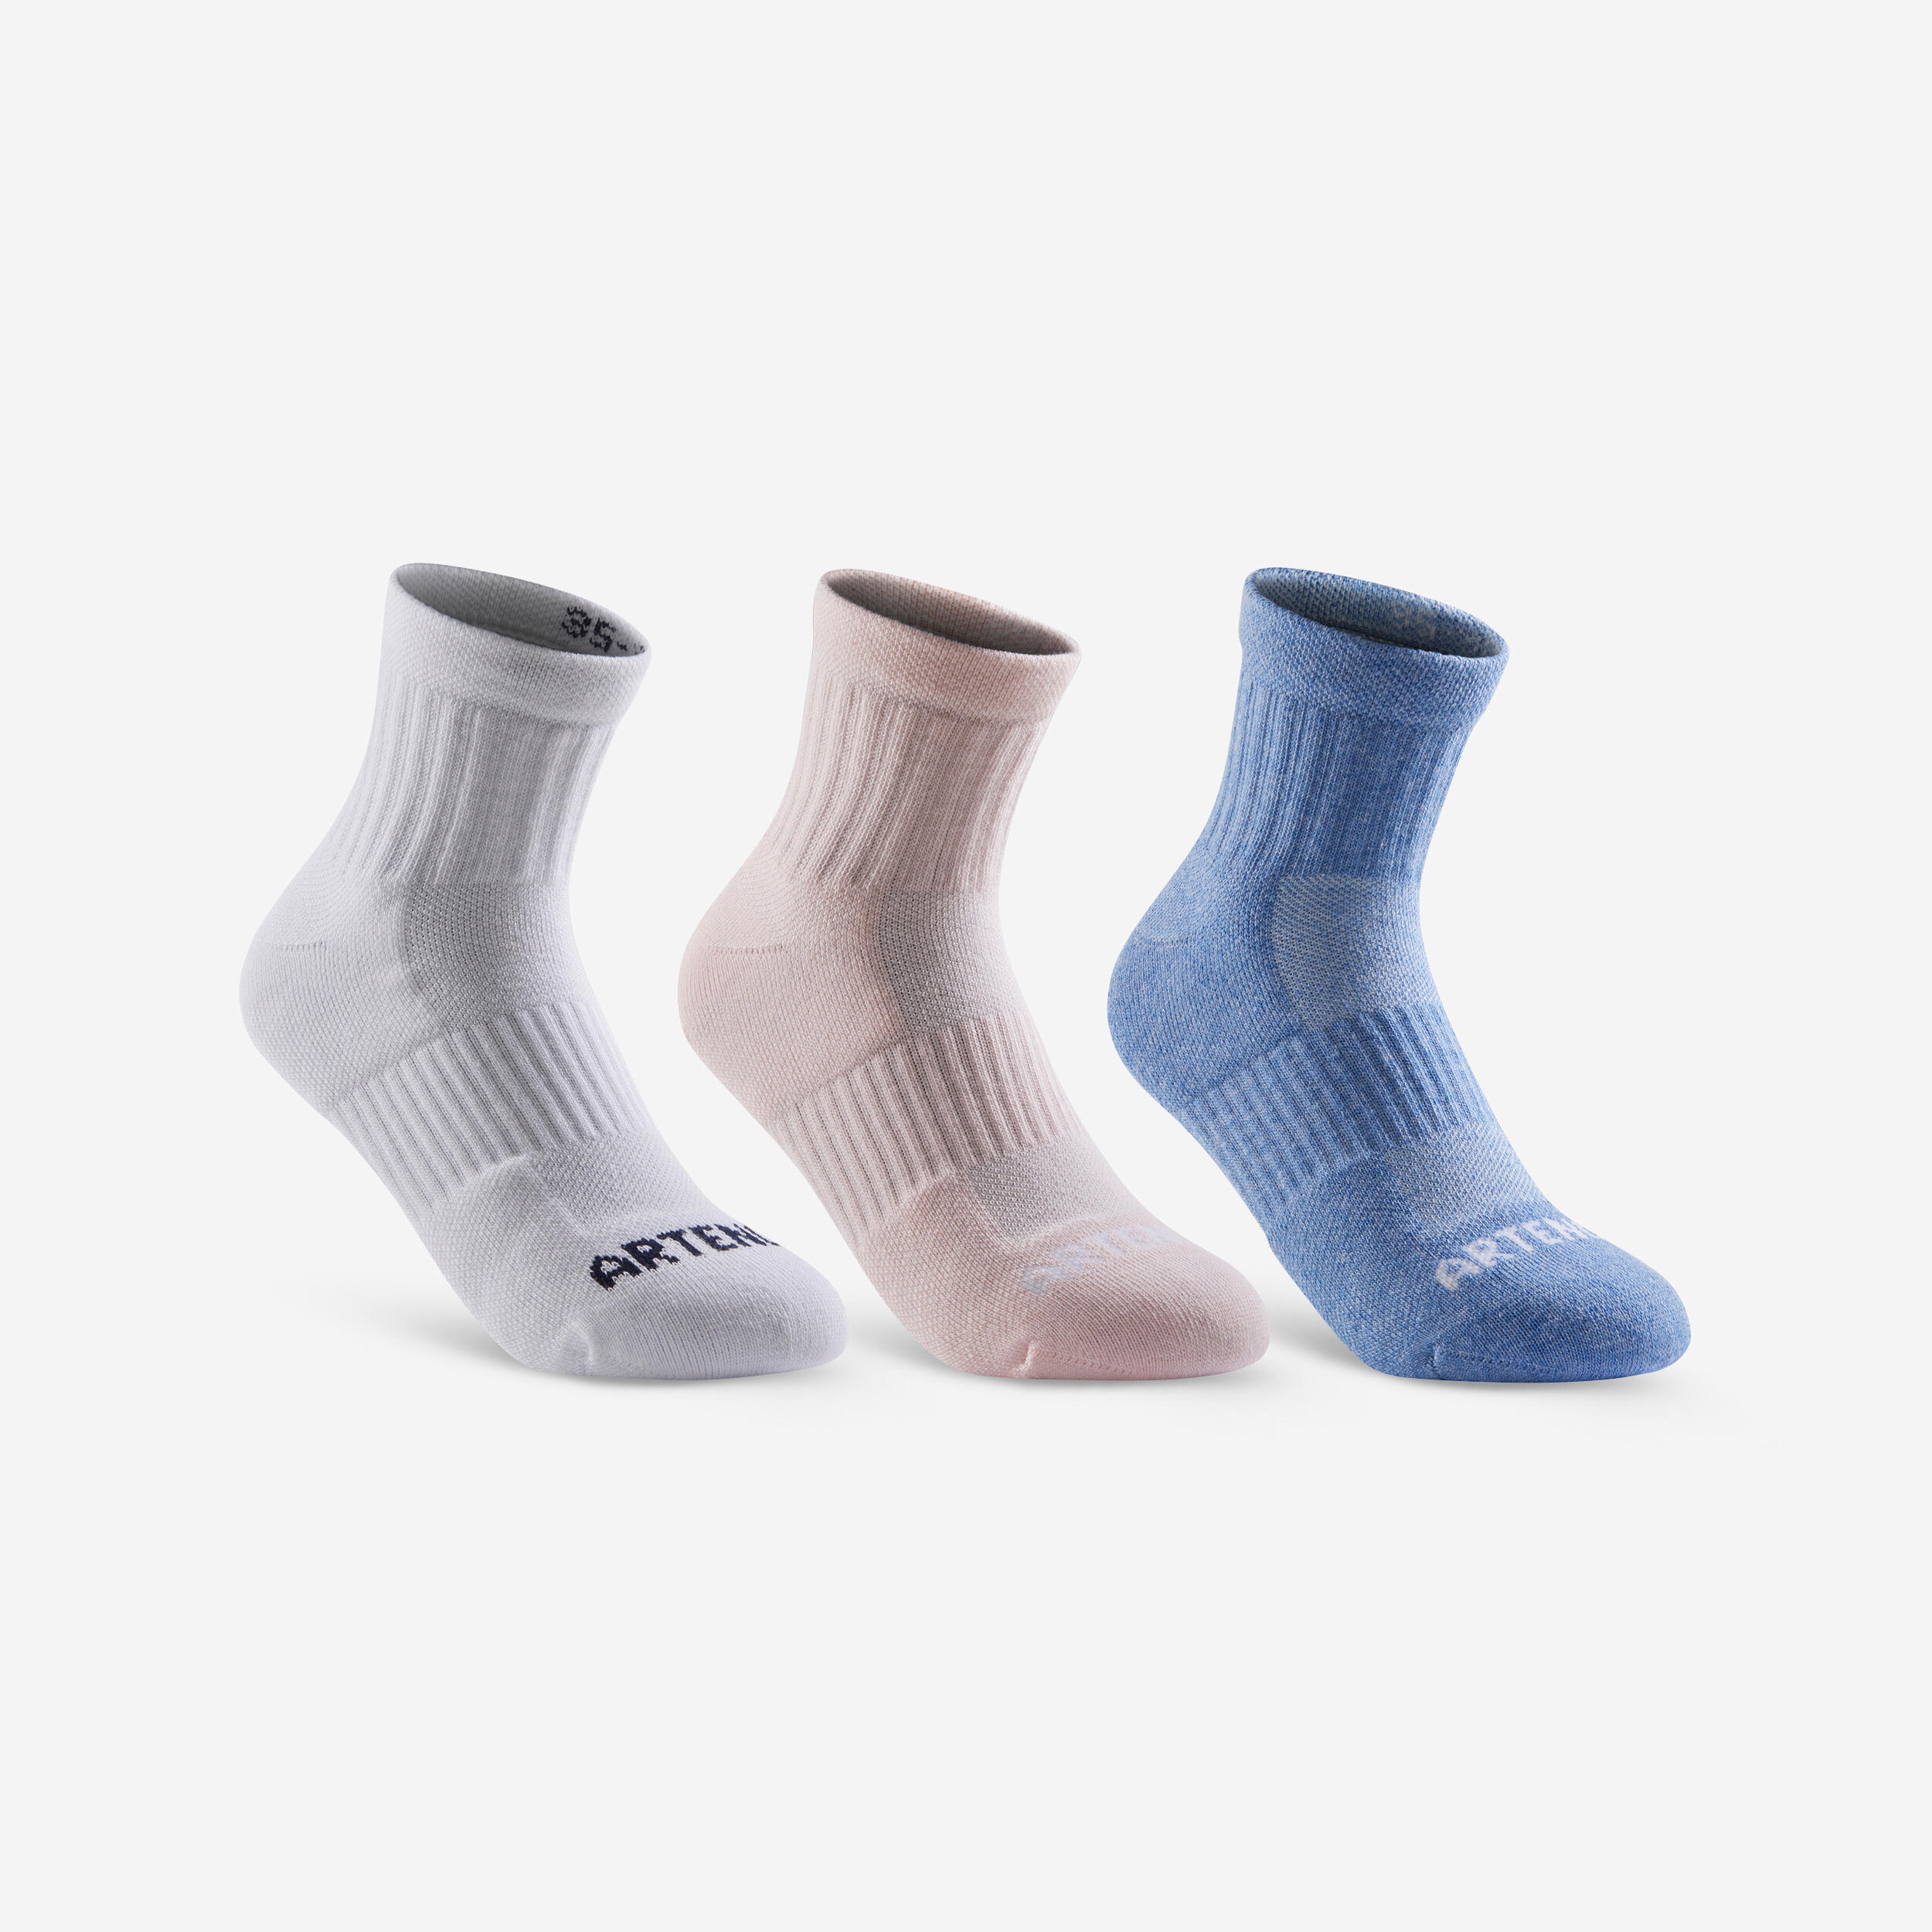 RS 500 sports socks – Kids